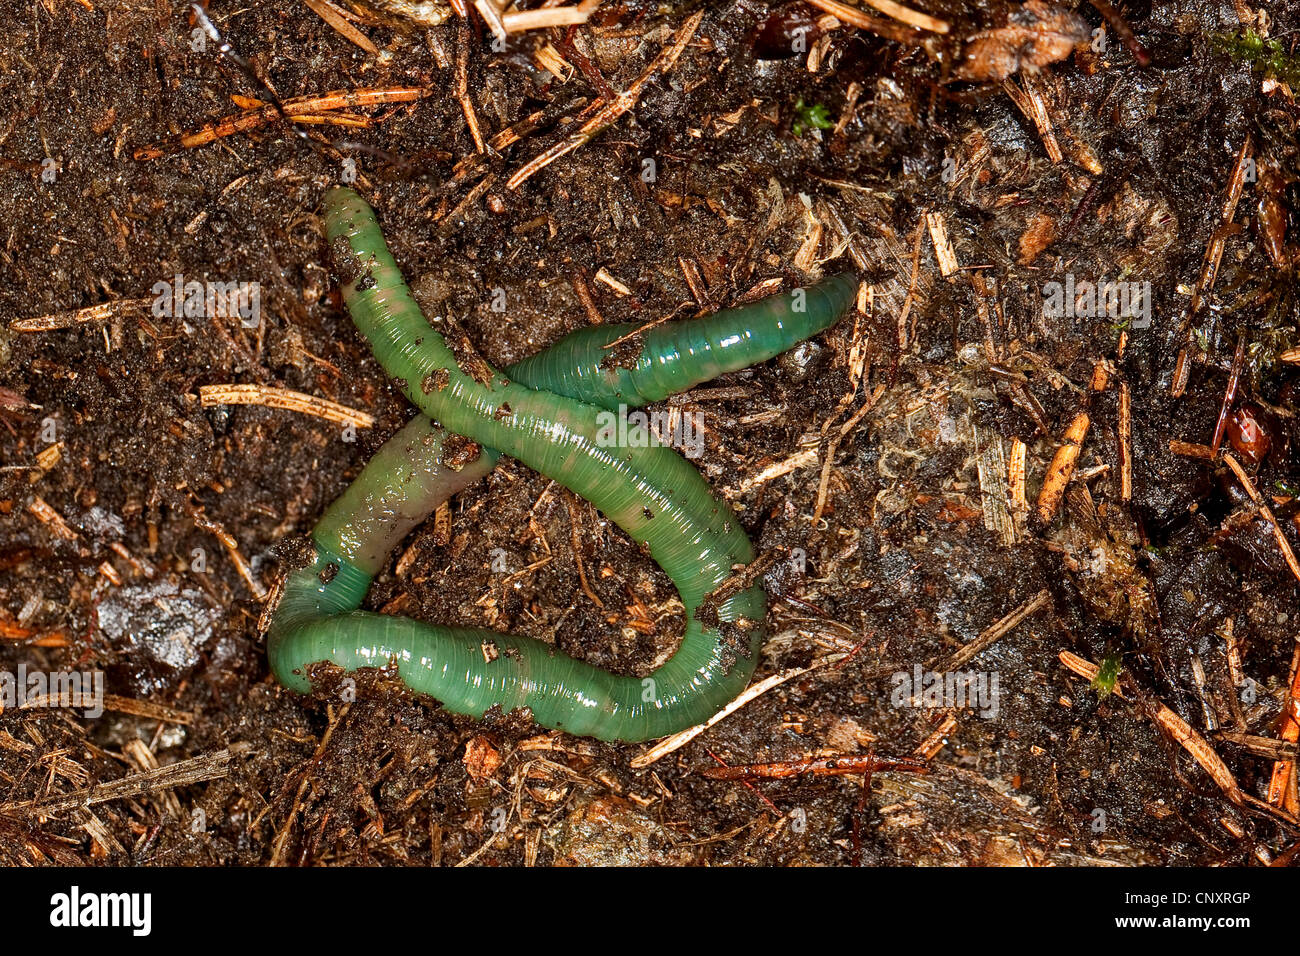 Grüne Regenwurm (Allolobophora Smaragdina) auf Nadelwald Boden, Deutschland Stockfoto